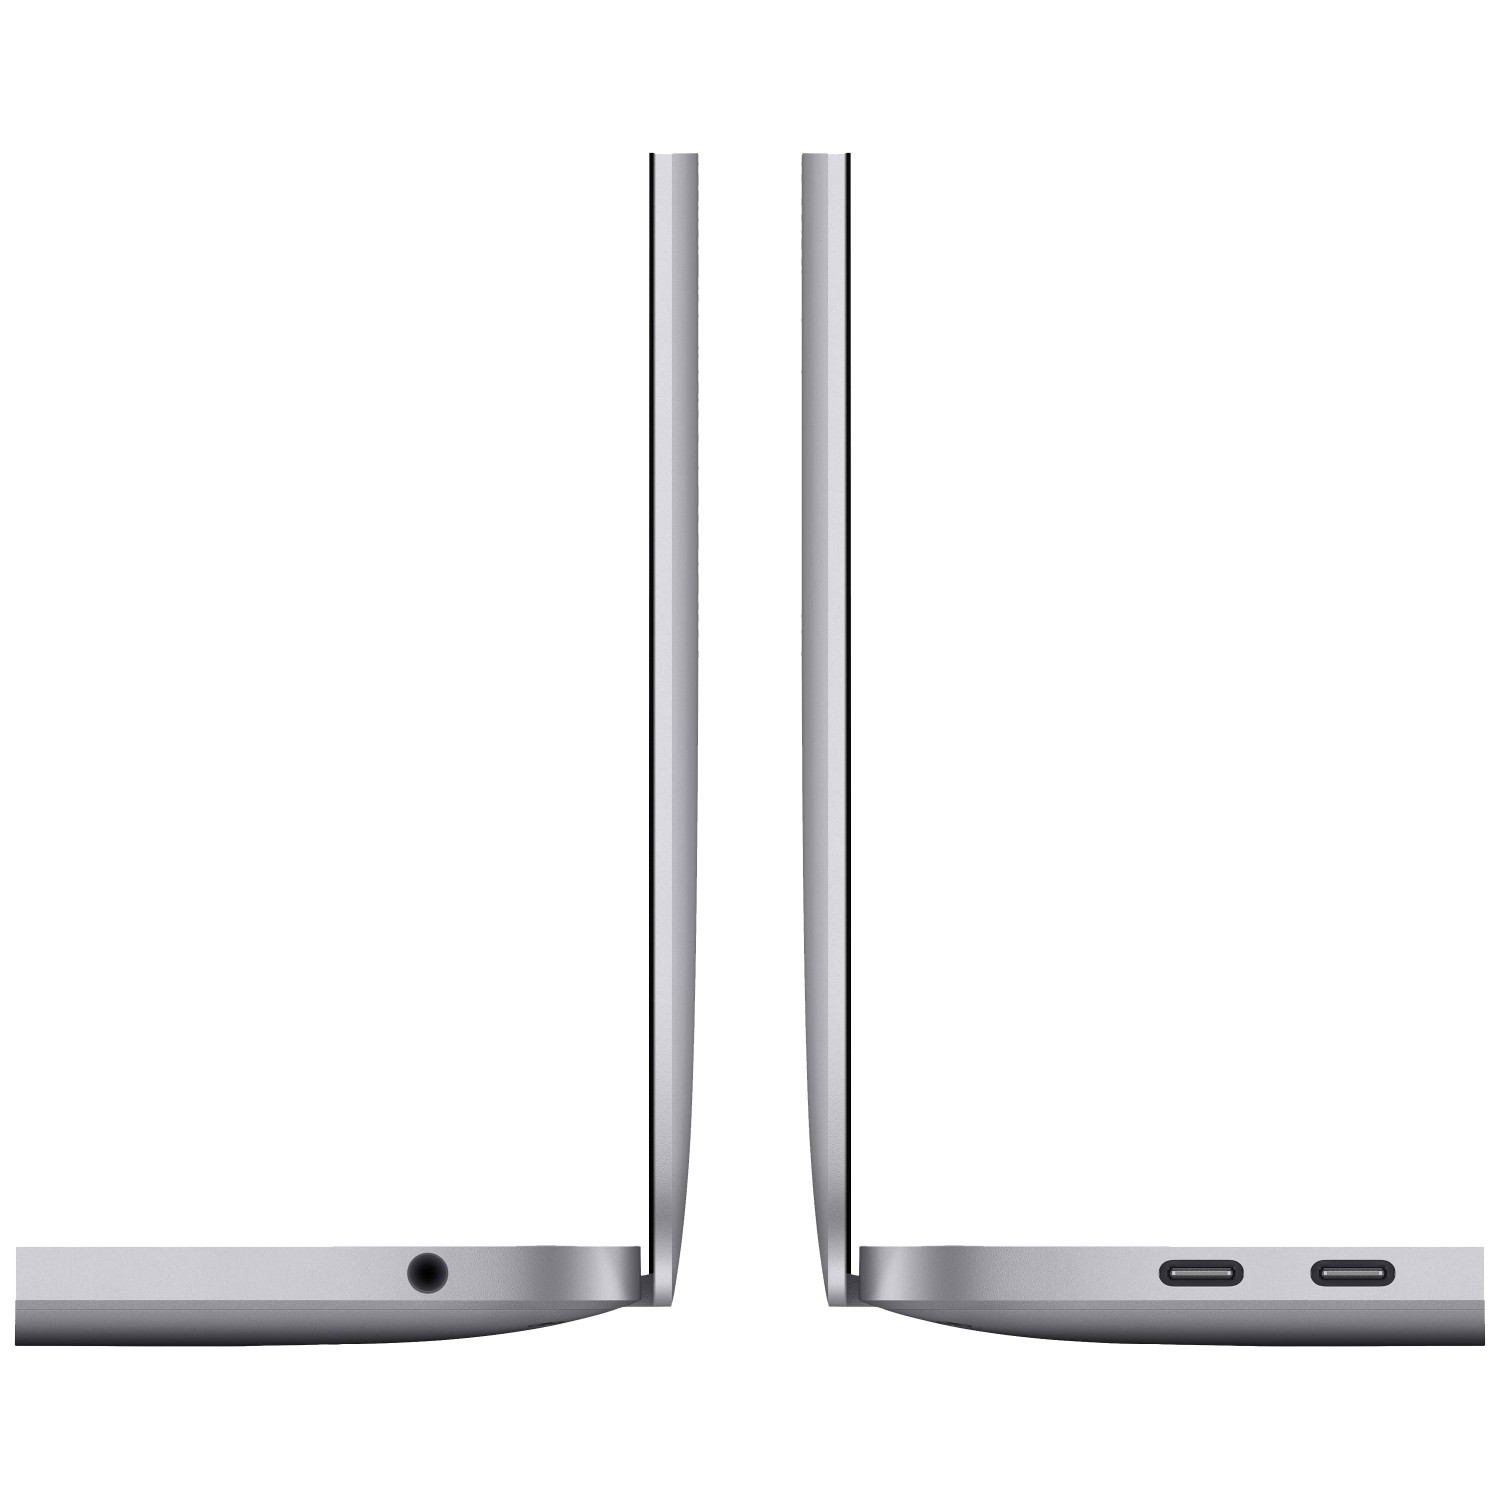 لپ تاپ Apple MacBook Pro 13 2020 CTO - Space Grey - E-4